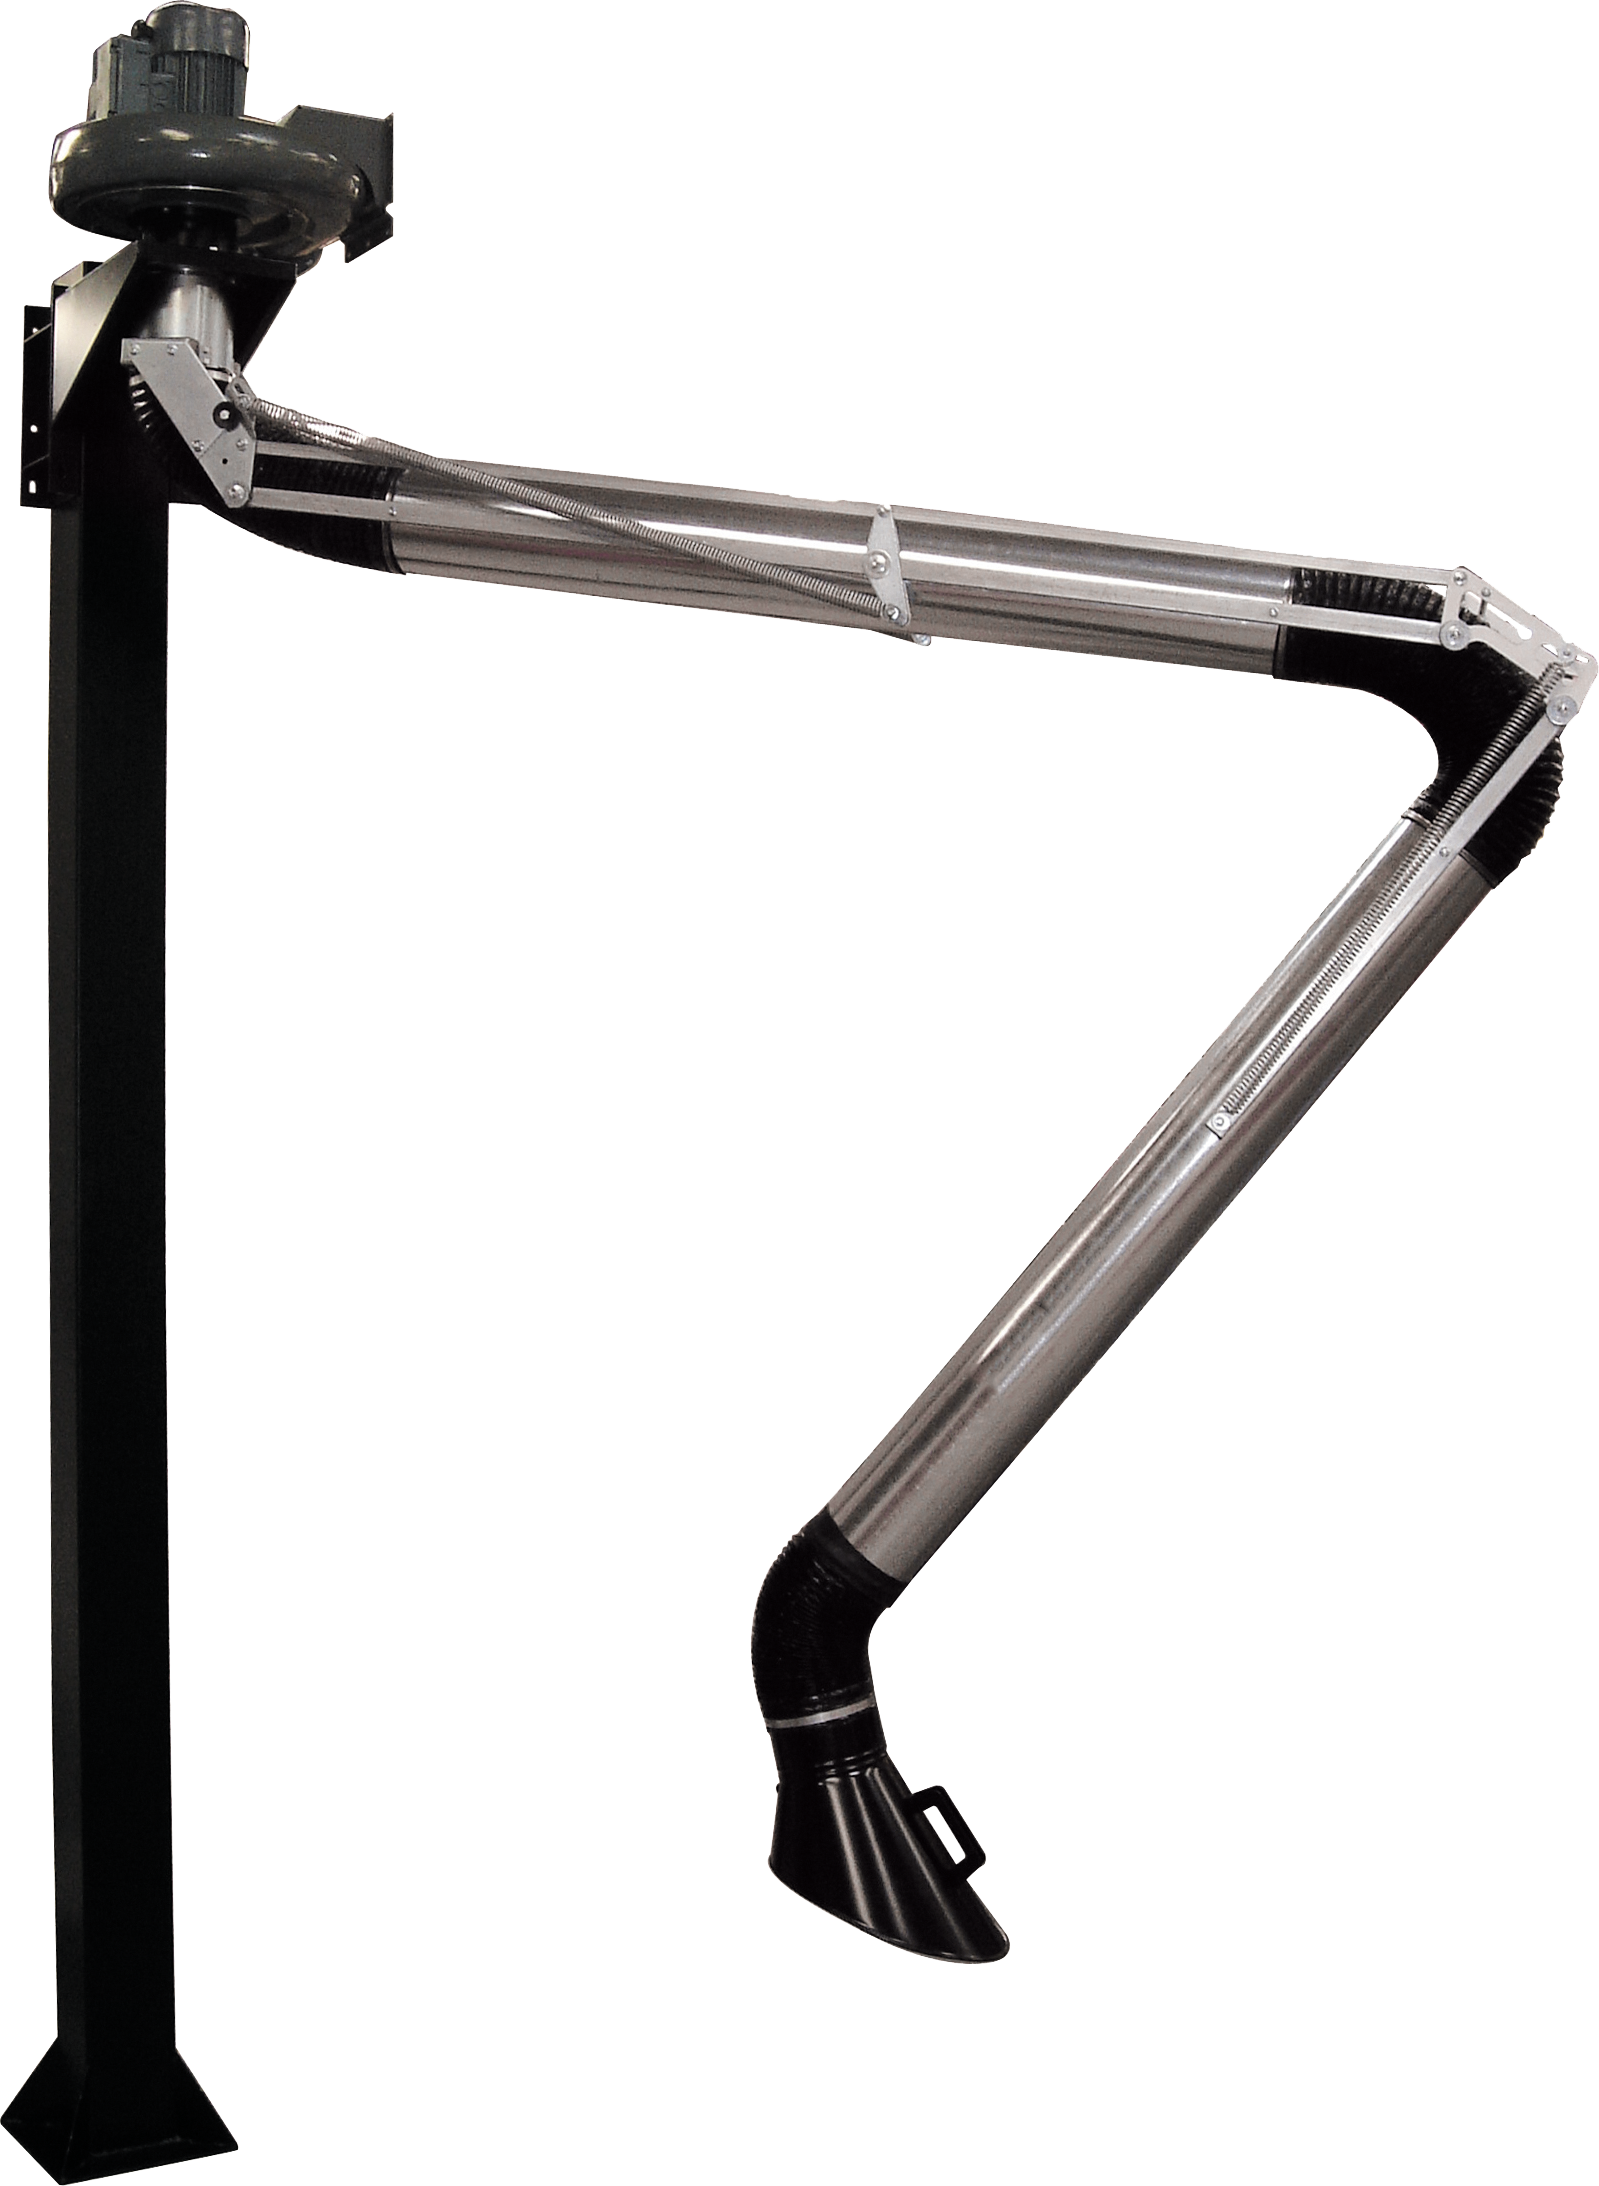 Articulated metal arm 3 m + vacuum cleaner M5